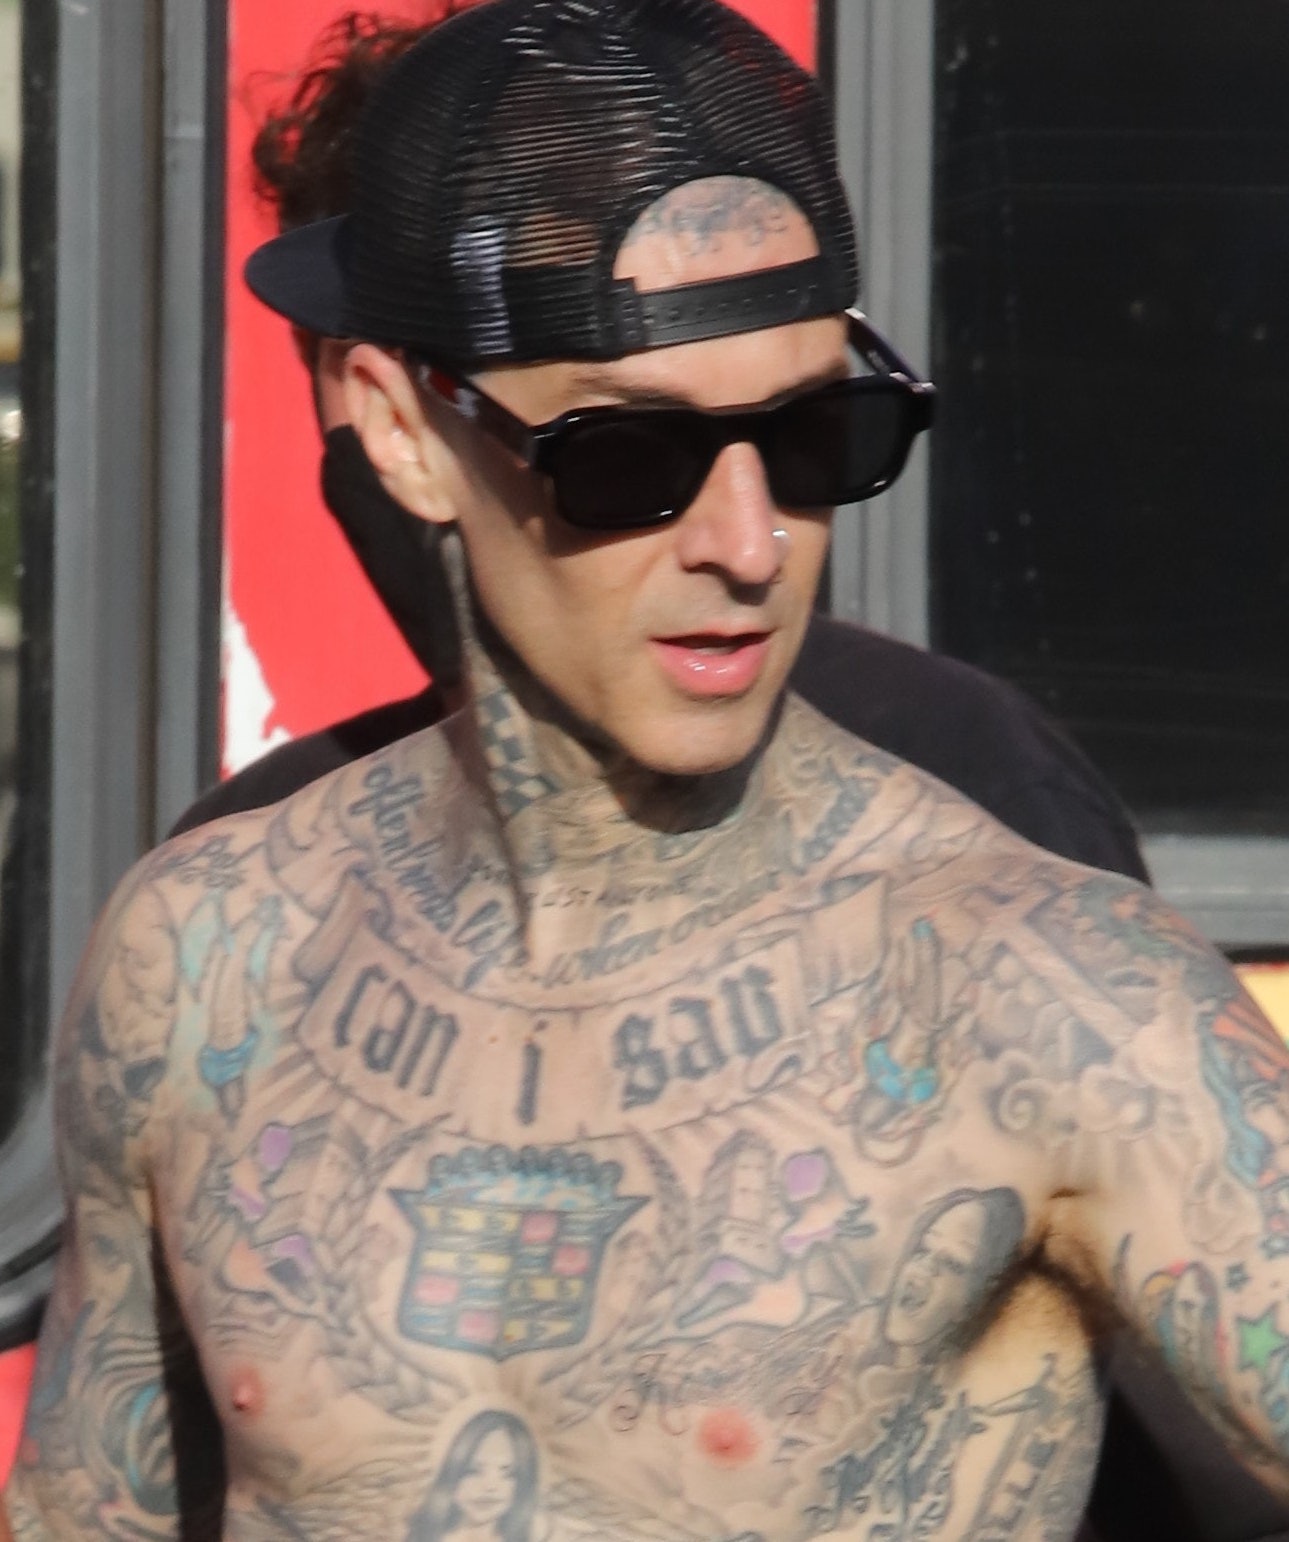 Nowy tatuaż na klatce piersiowej Travisa Barkera to bardzo wyraźny hołd dla Kourtney Kardashian